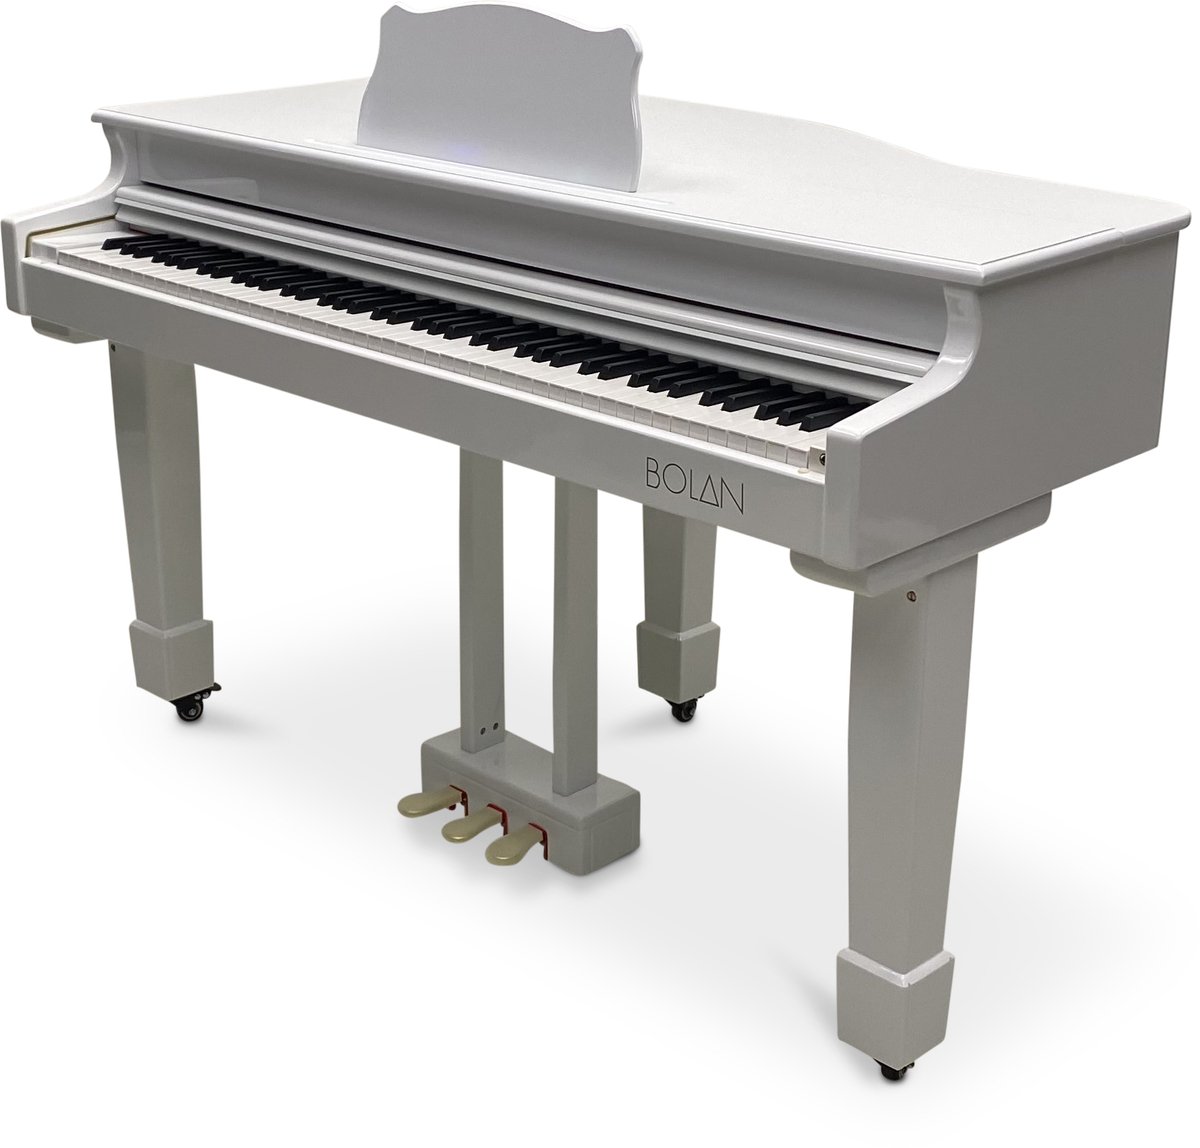 Bolan GP-1 digitale vleugel wit hoogglans - babyvleugel - elektrische piano 88 toetsen - gewogen toetsen - bluetooth verbinden met mp3 en midi